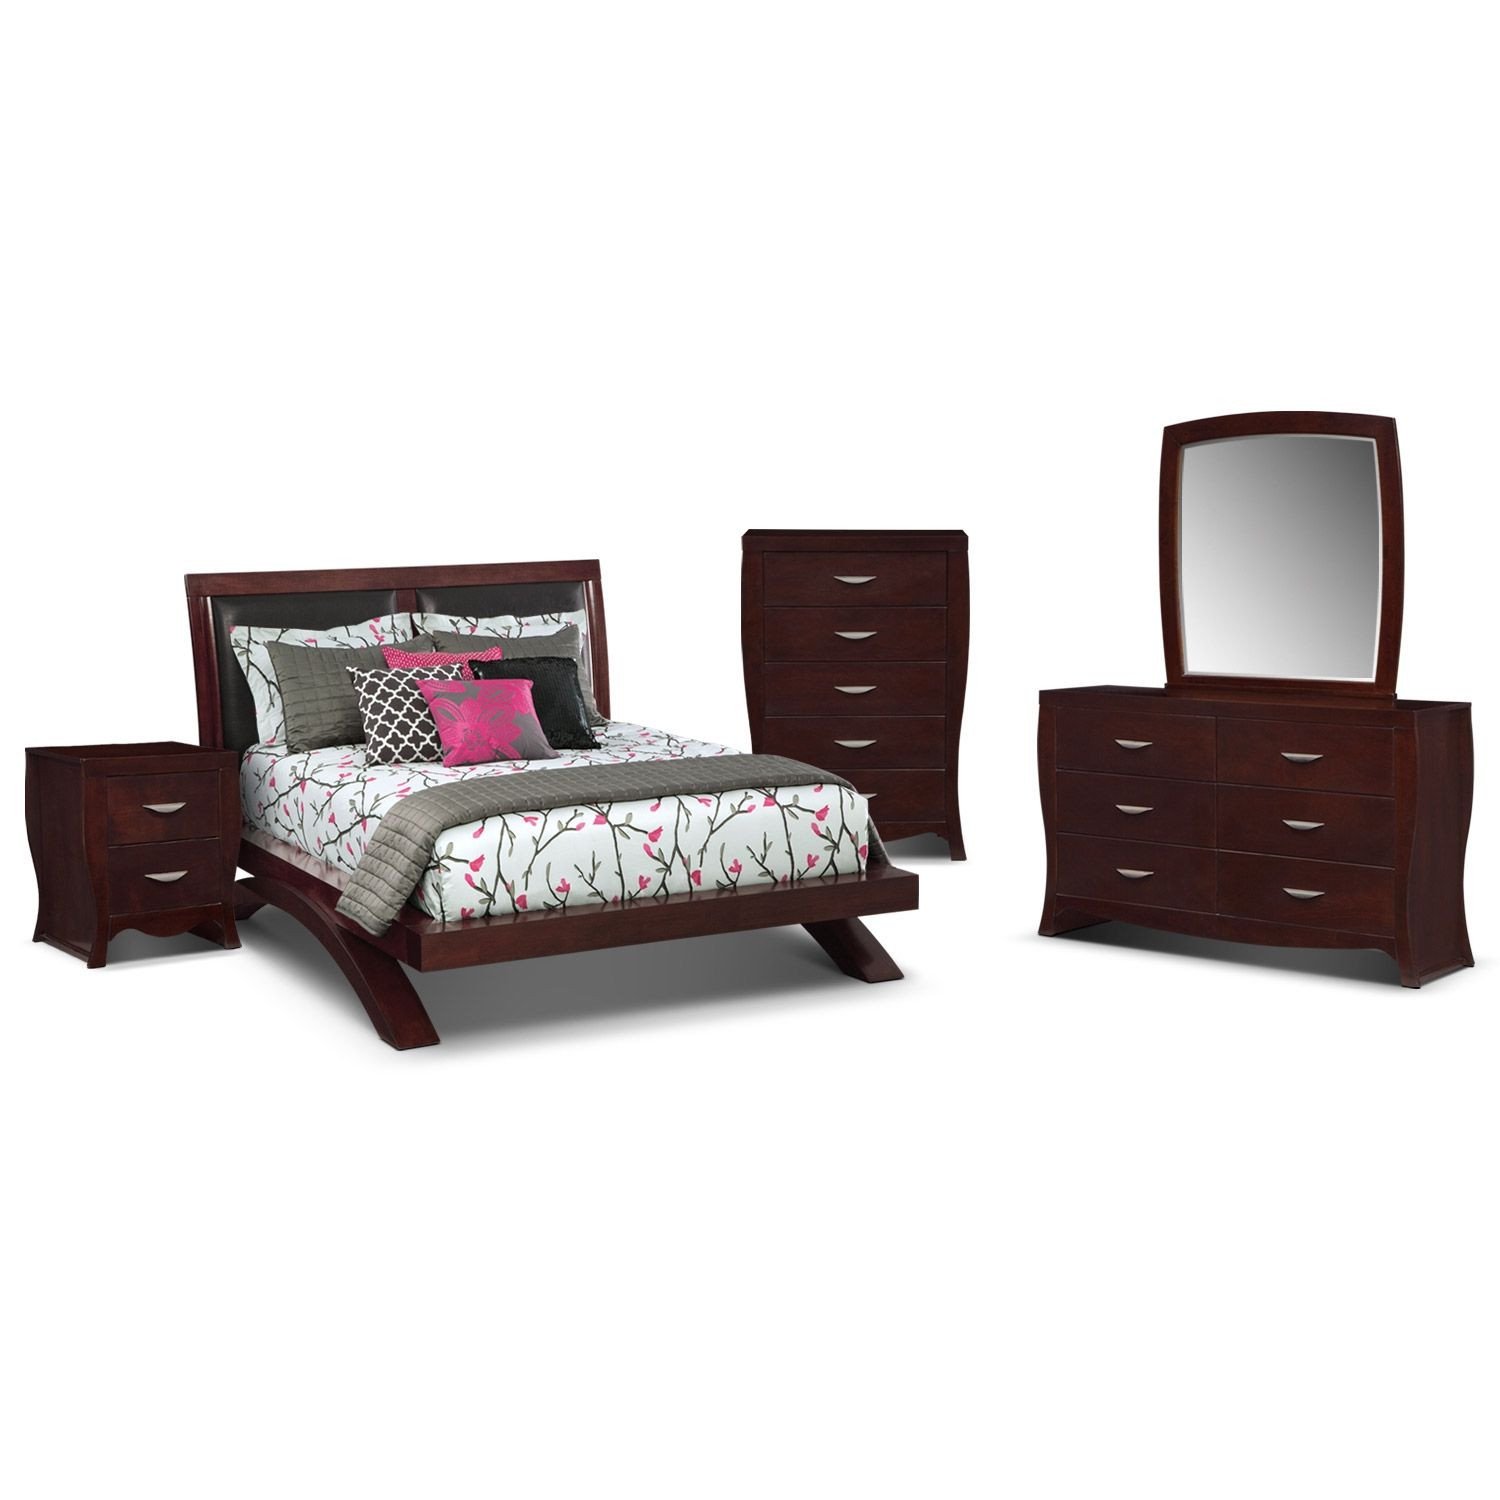 Value City Bedroom Set On Sale Fresh Bedroom Furniture Jaden Arch 7 Pc Queen Bedroom